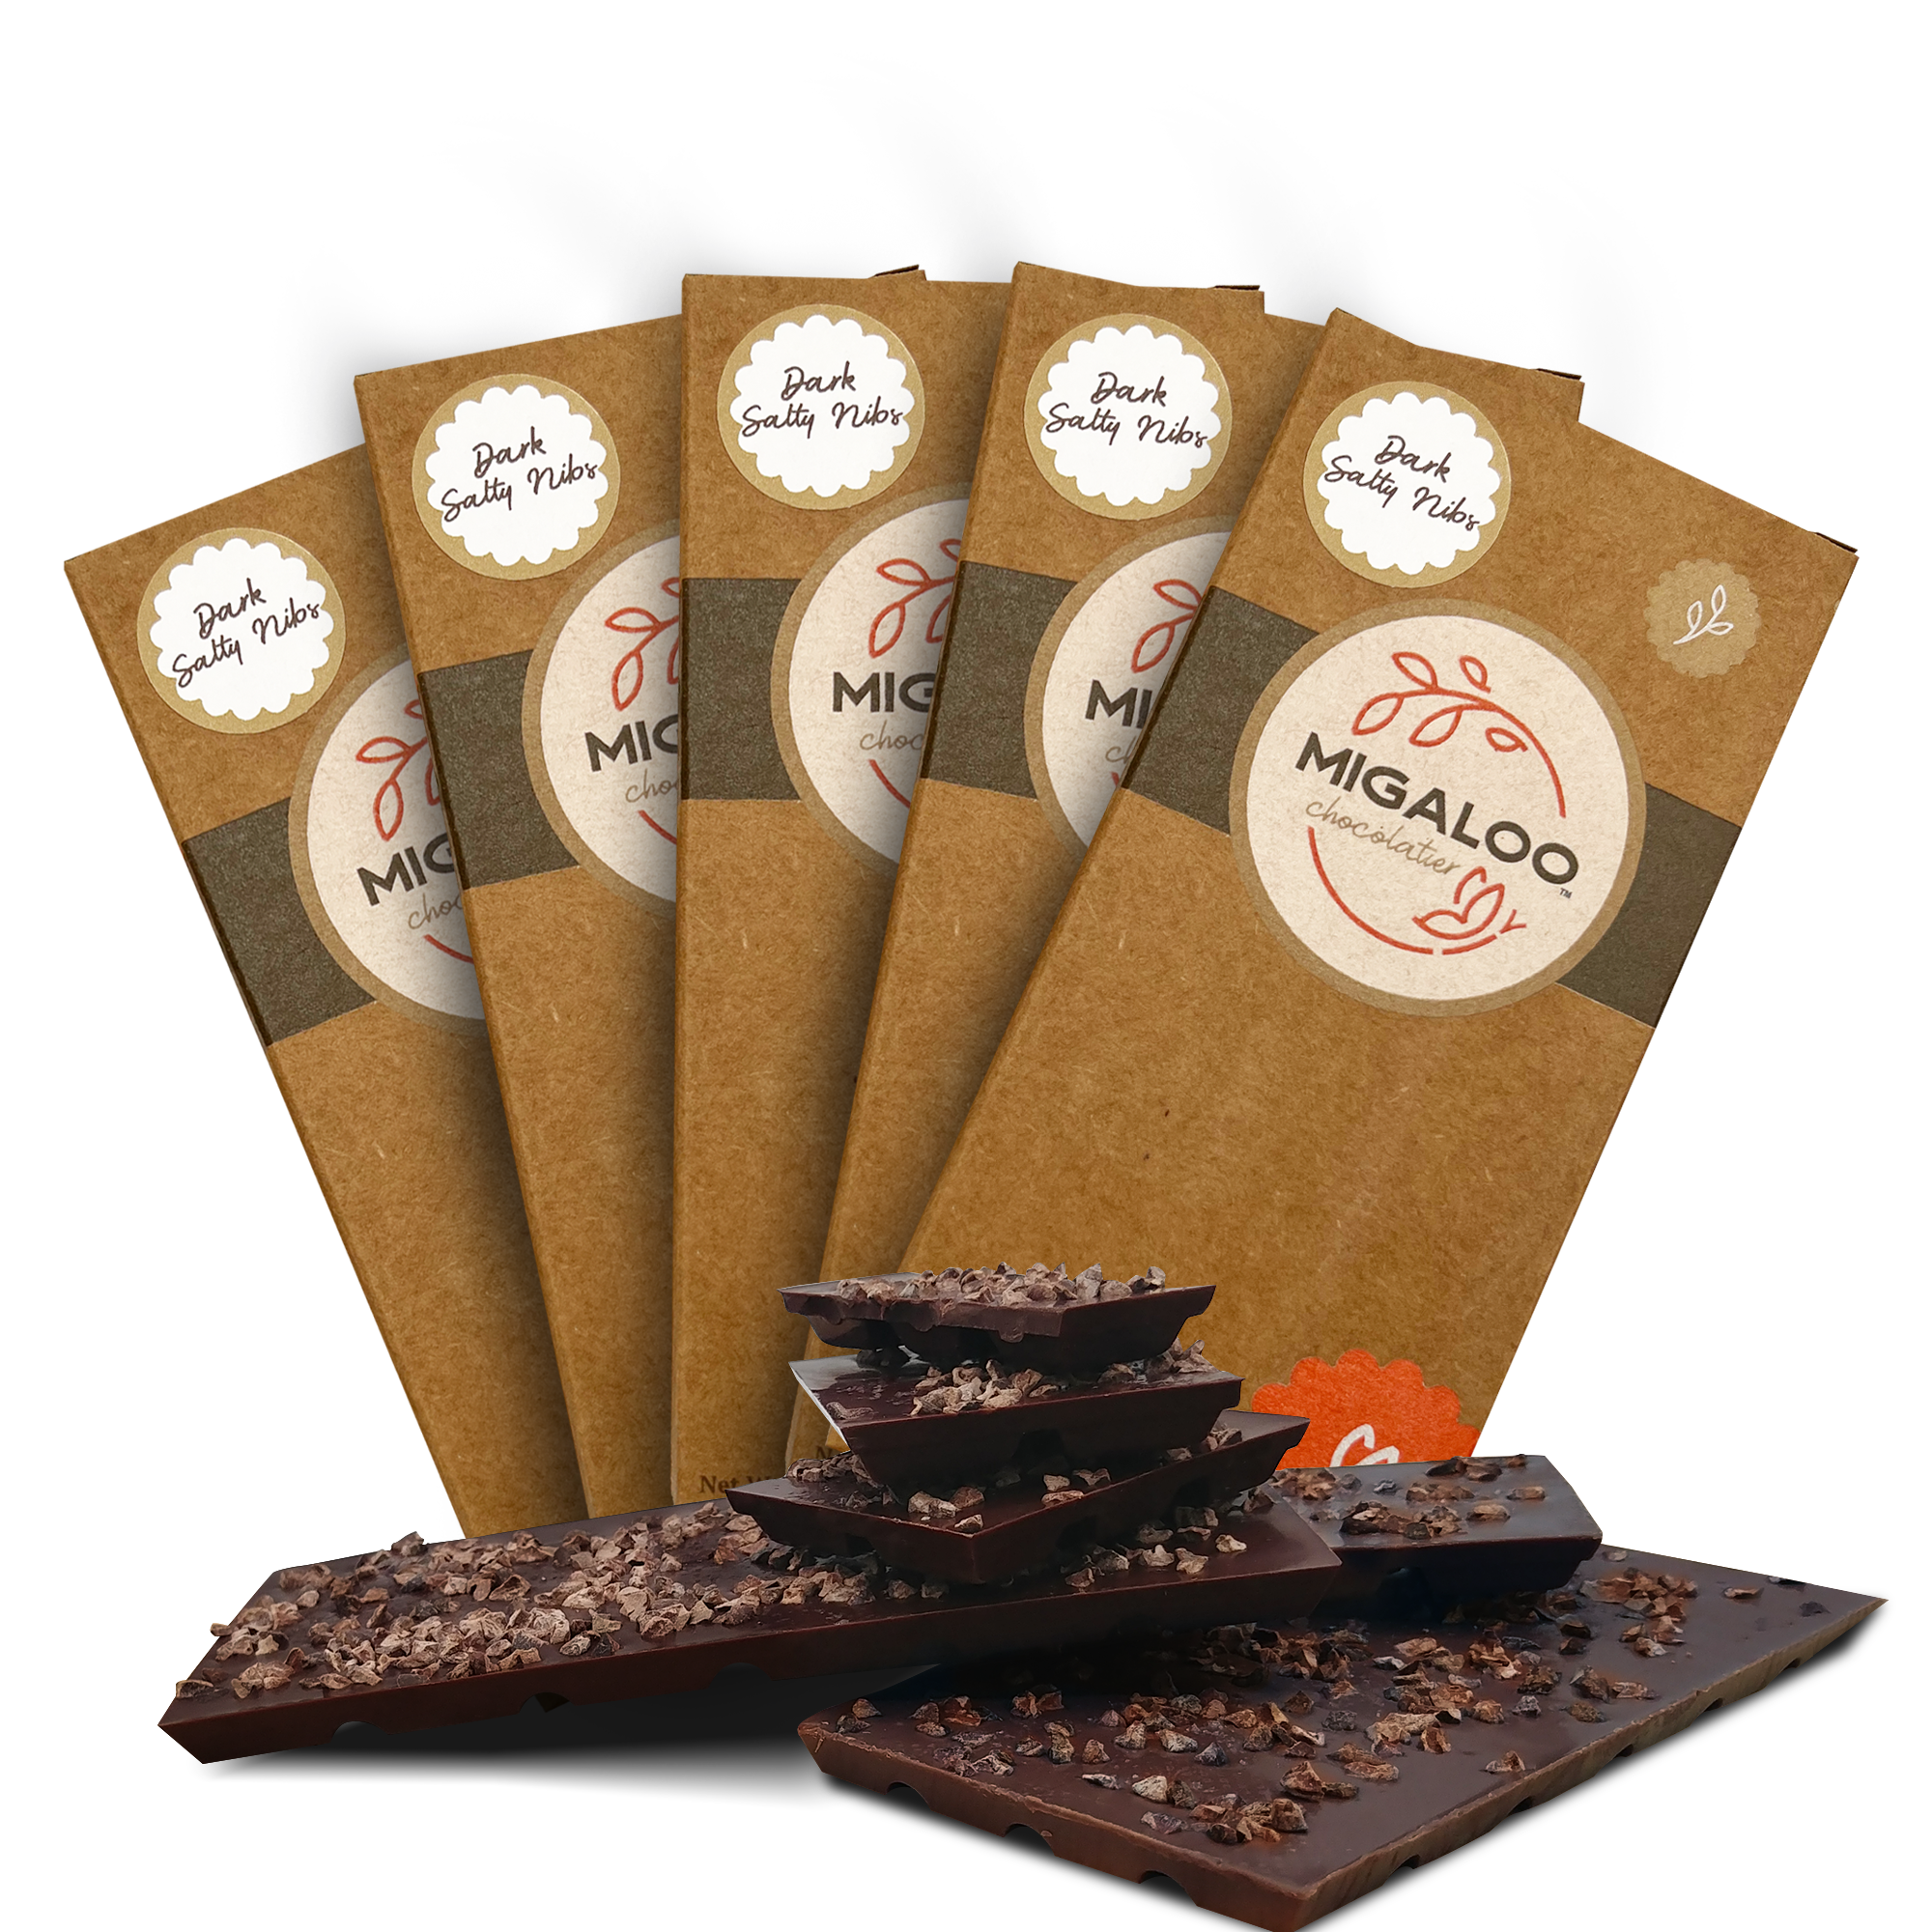 Top seller Dark Chocolate Bars – Dark Salty Nibs (65g)